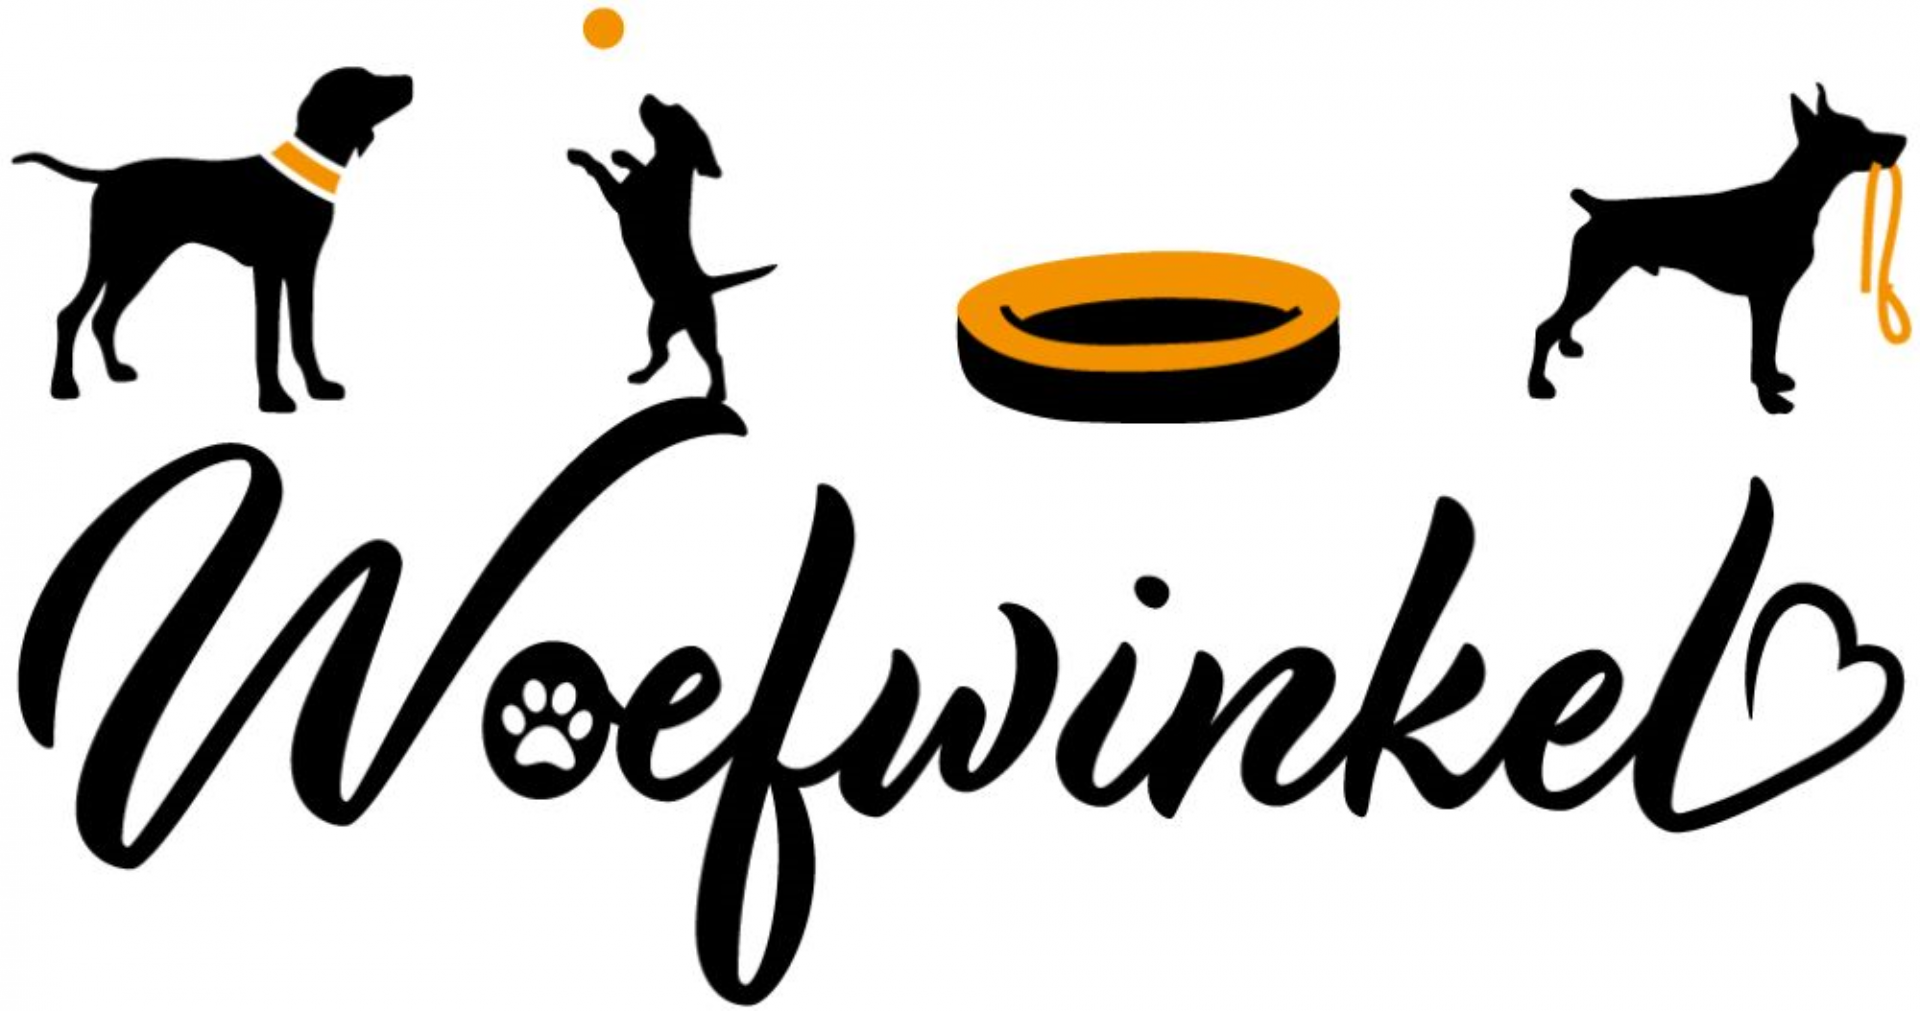 Woefwinkel logo 1